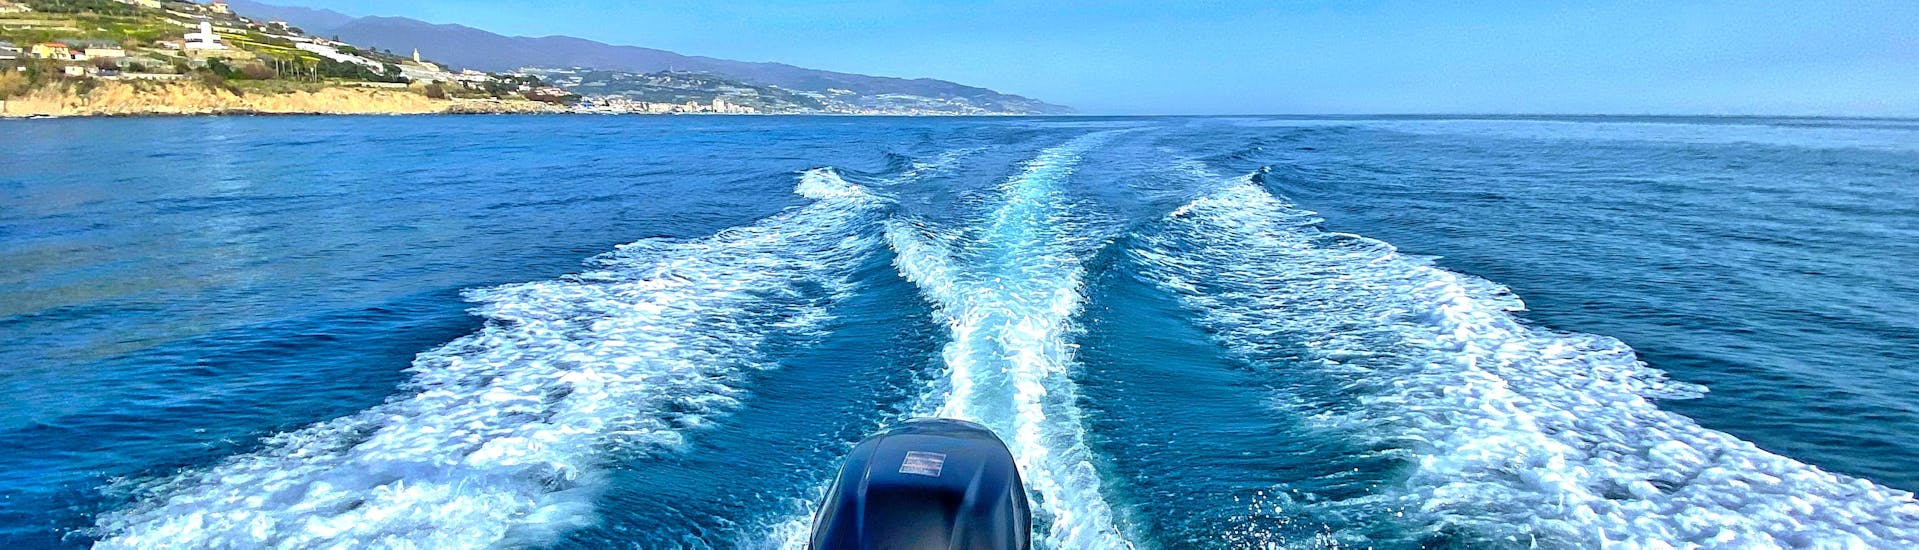 Gita in barca privata da Sanremo con soste per nuotare e aperitivo.